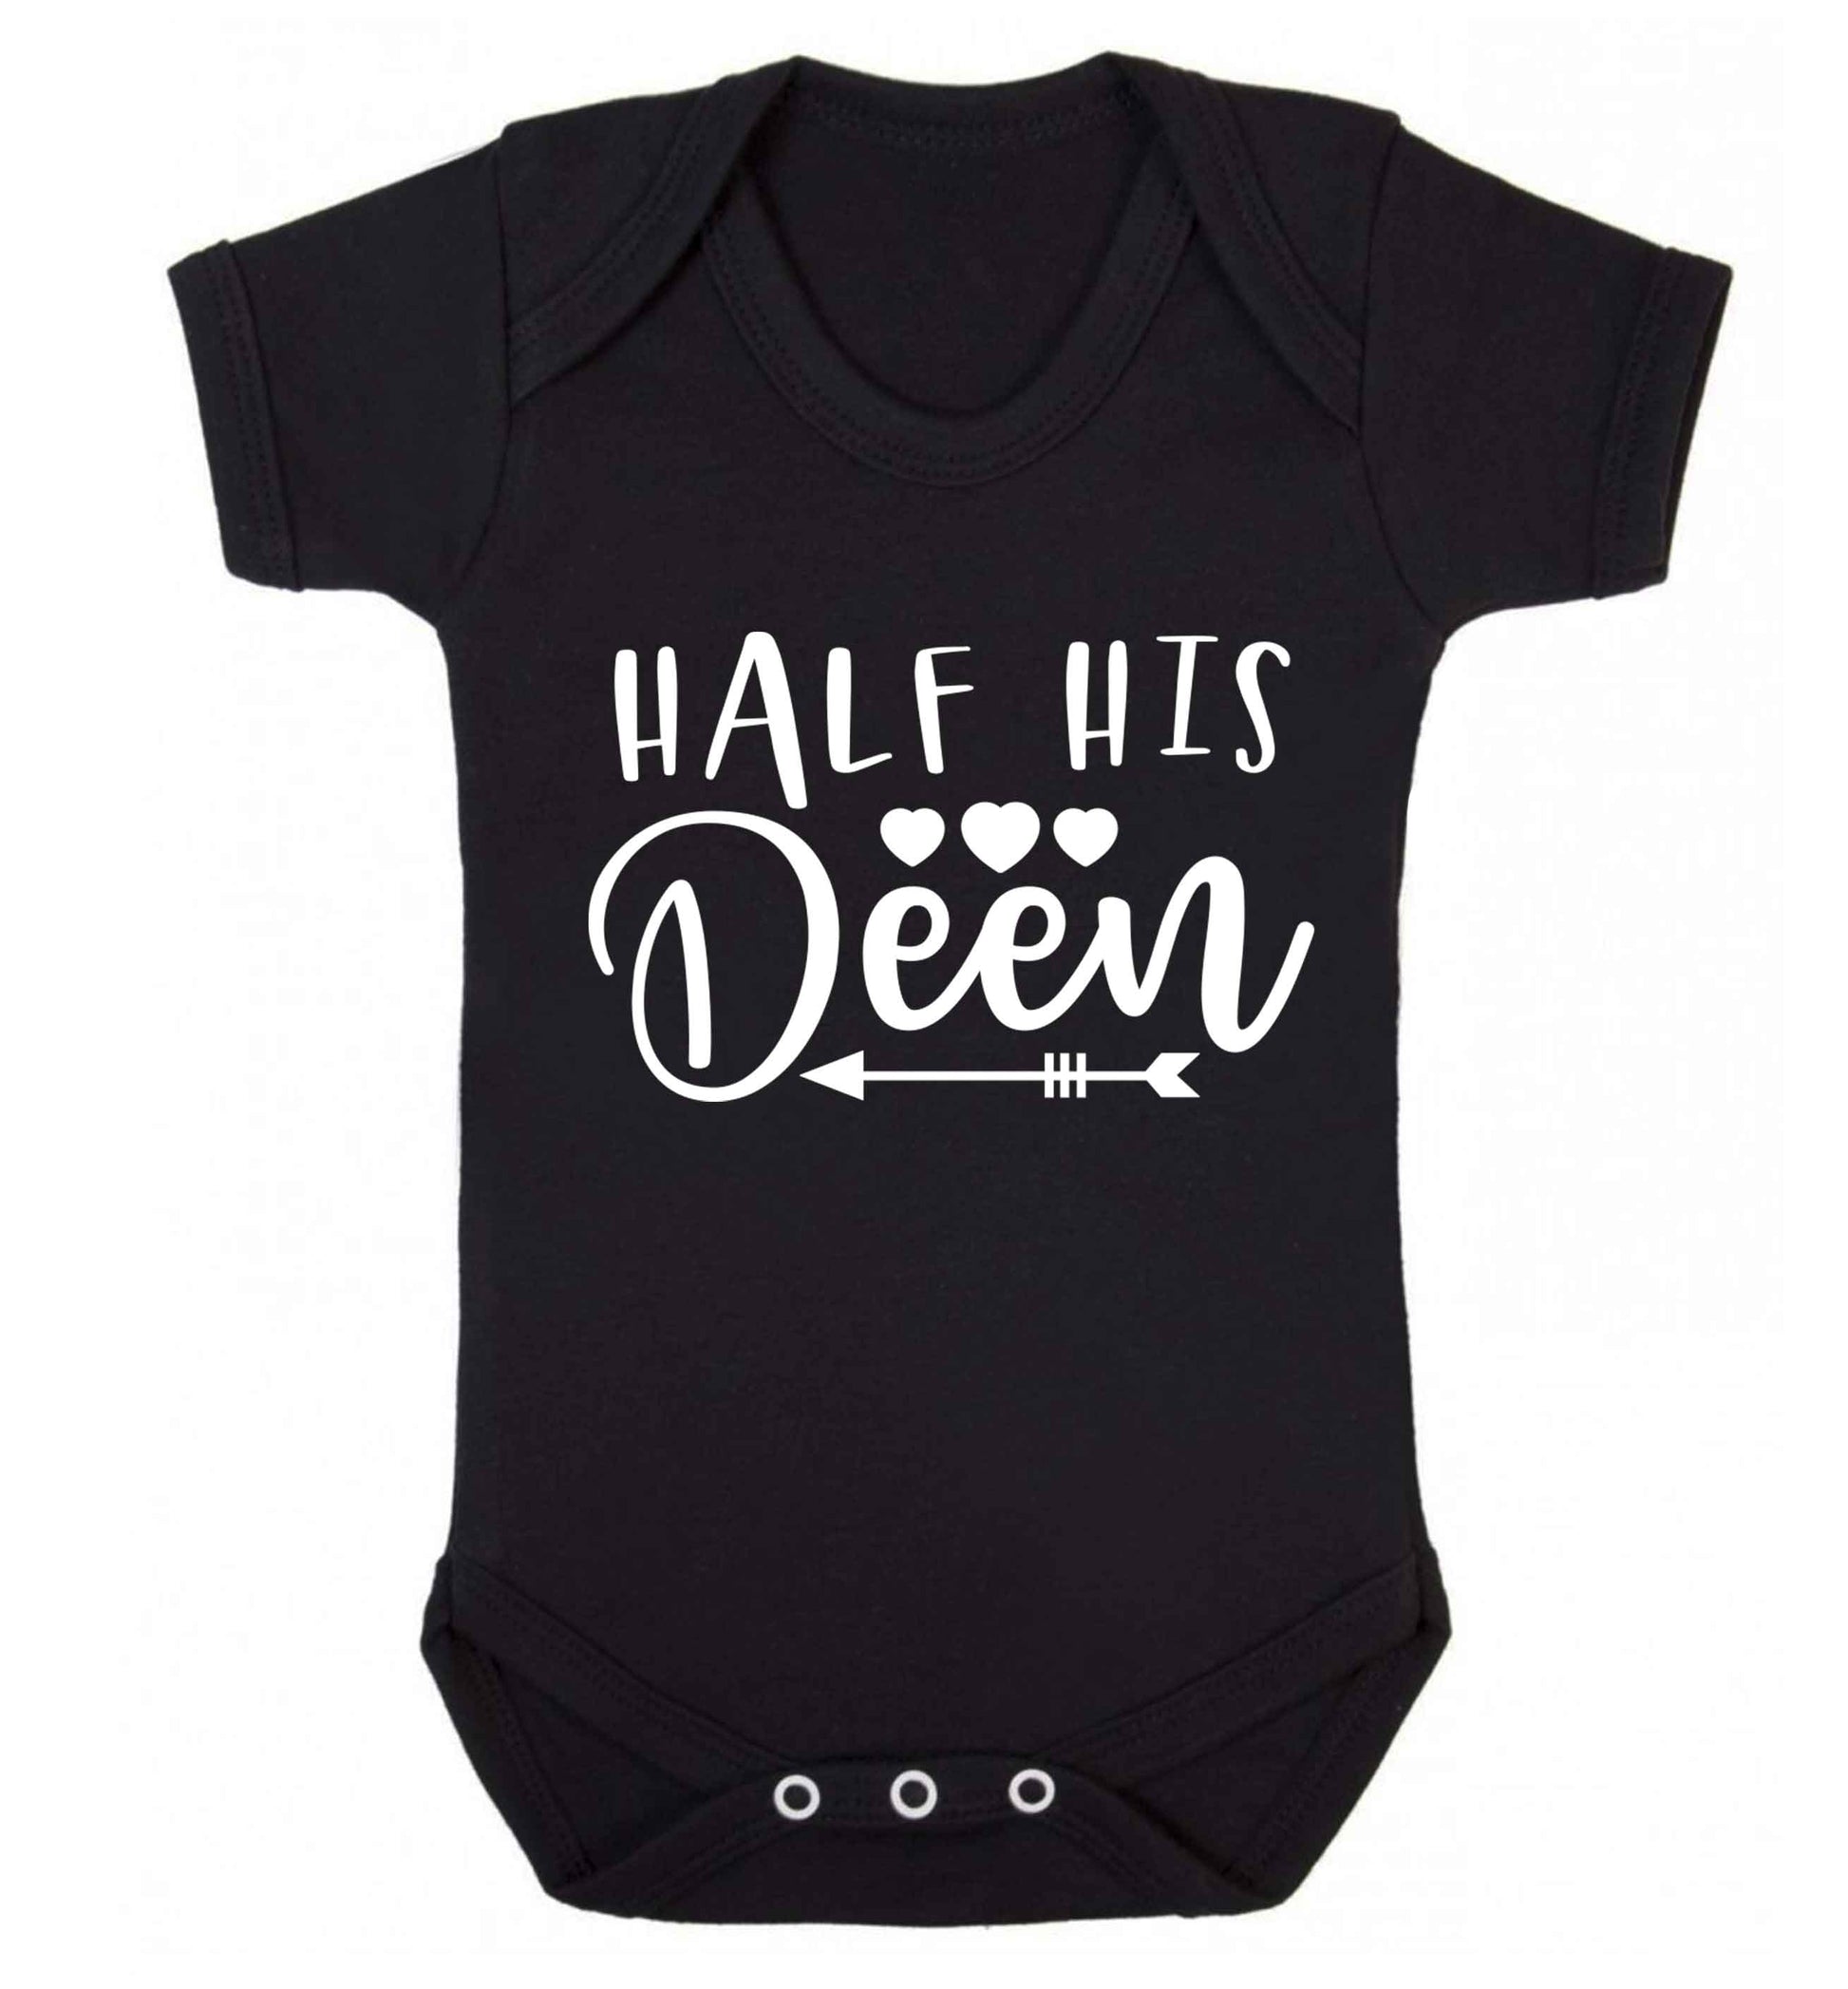 Half his deen Baby Vest black 18-24 months